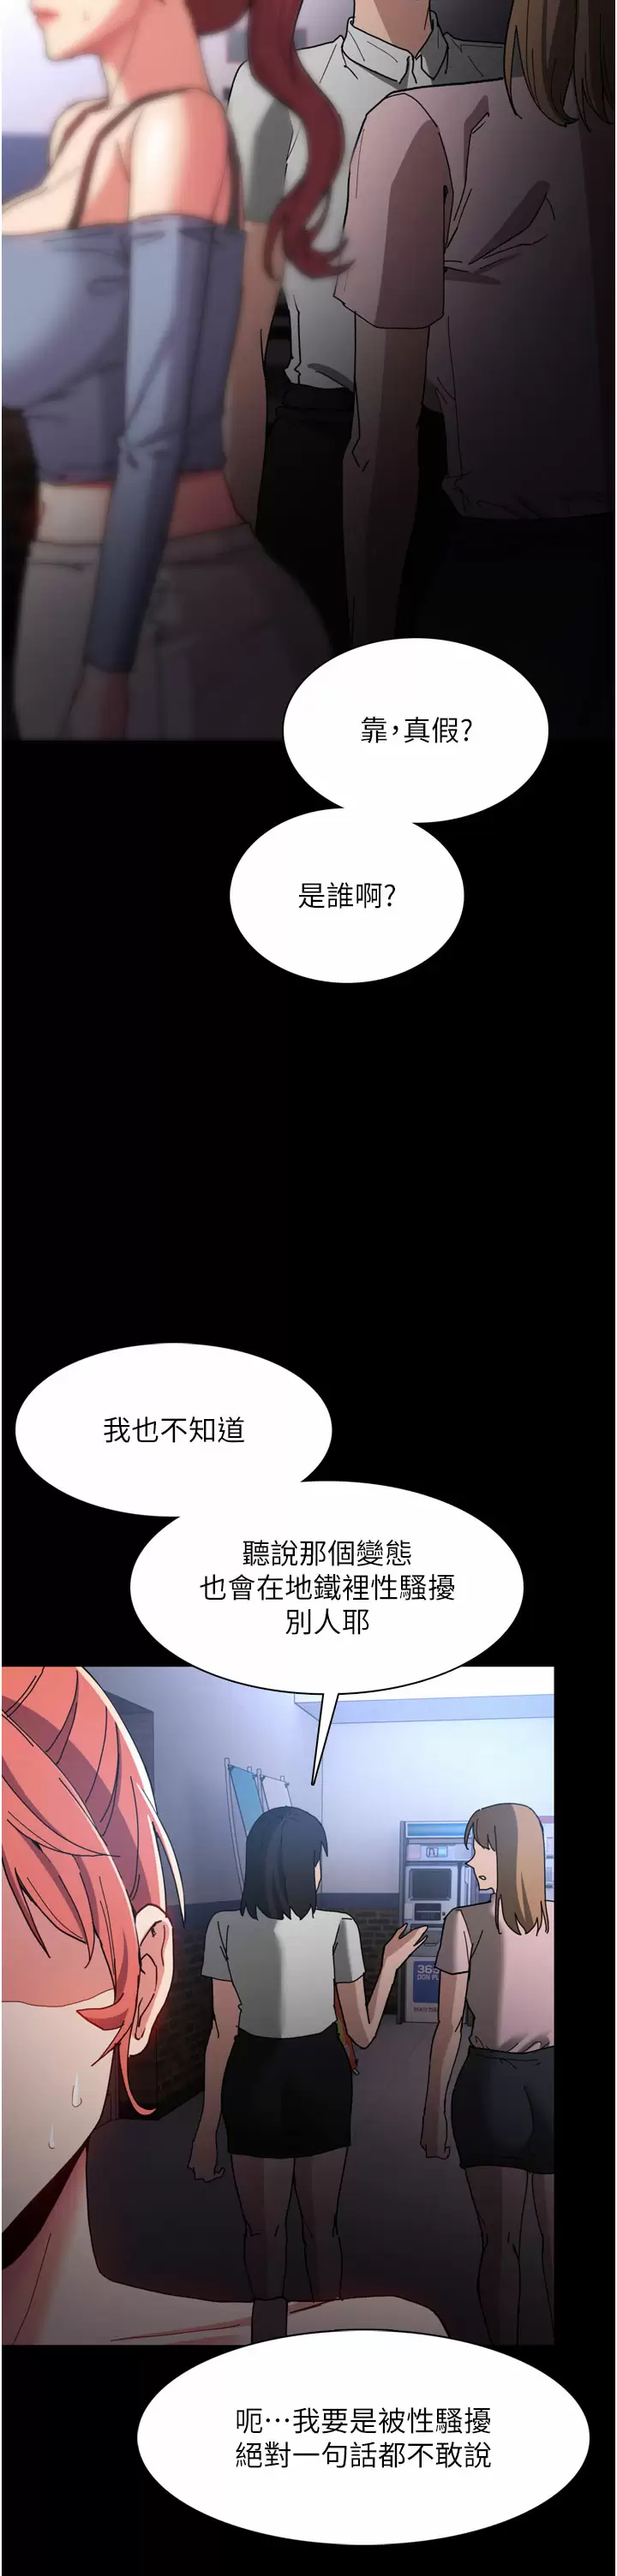 韩国污漫画 癡漢成癮 第8话 战胜羞耻心的解放快感 30